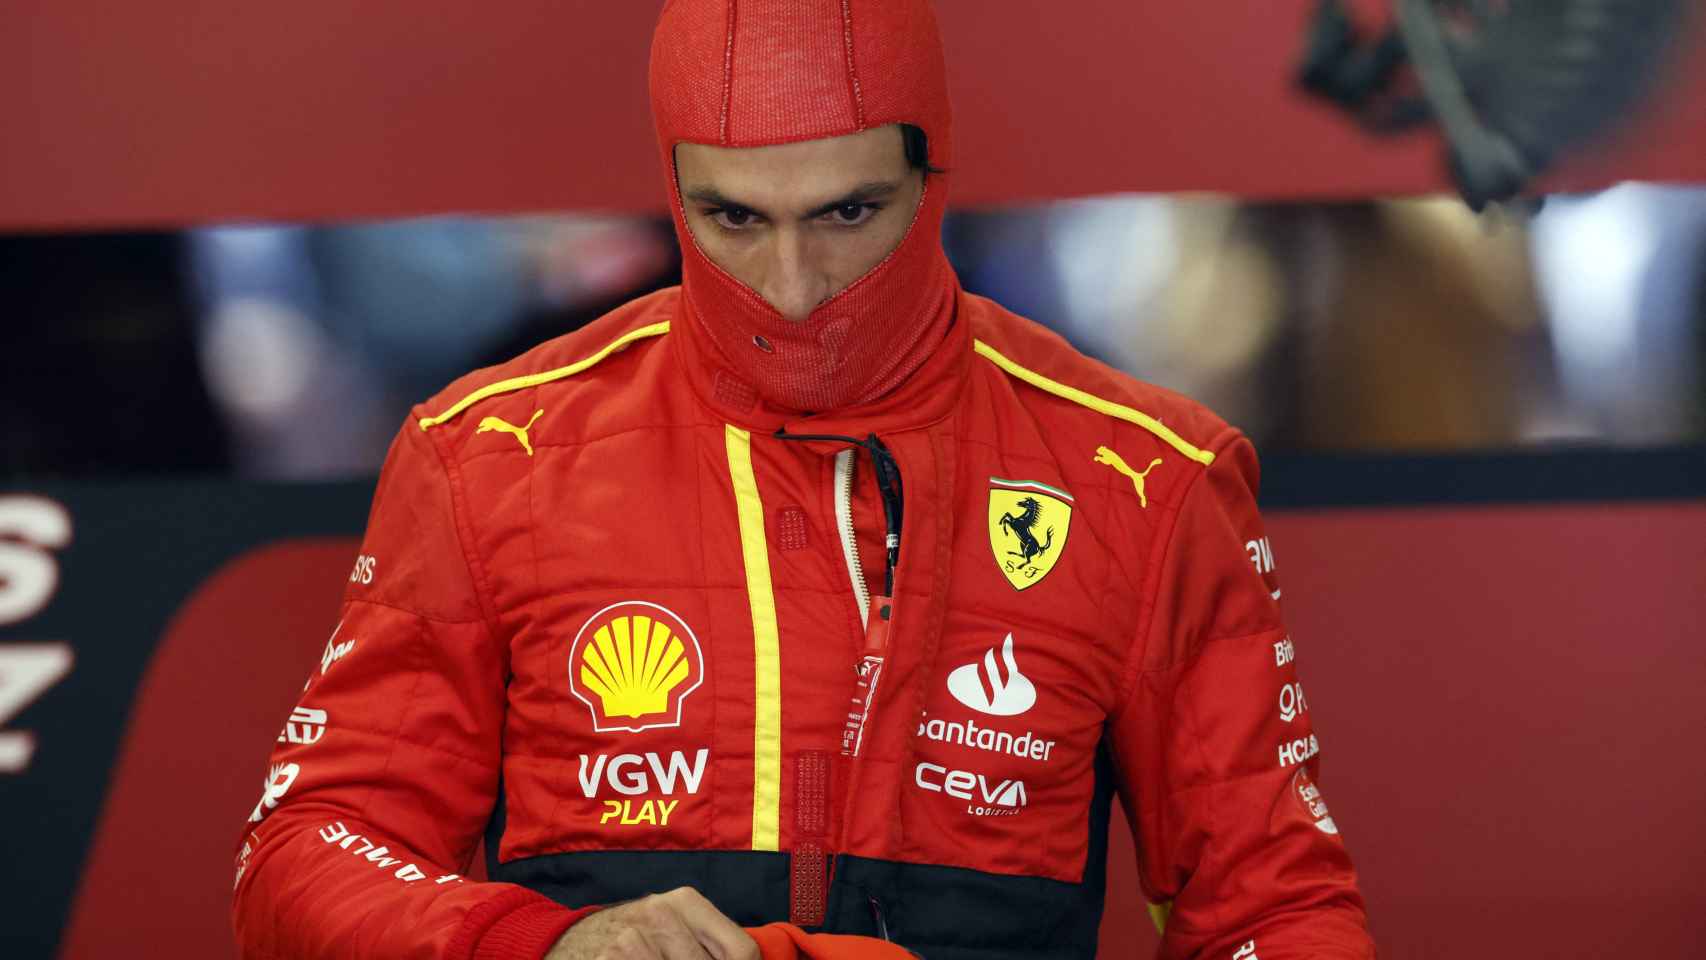 Carlos Sainz, pensativo en el box durante los libres del GP de España.